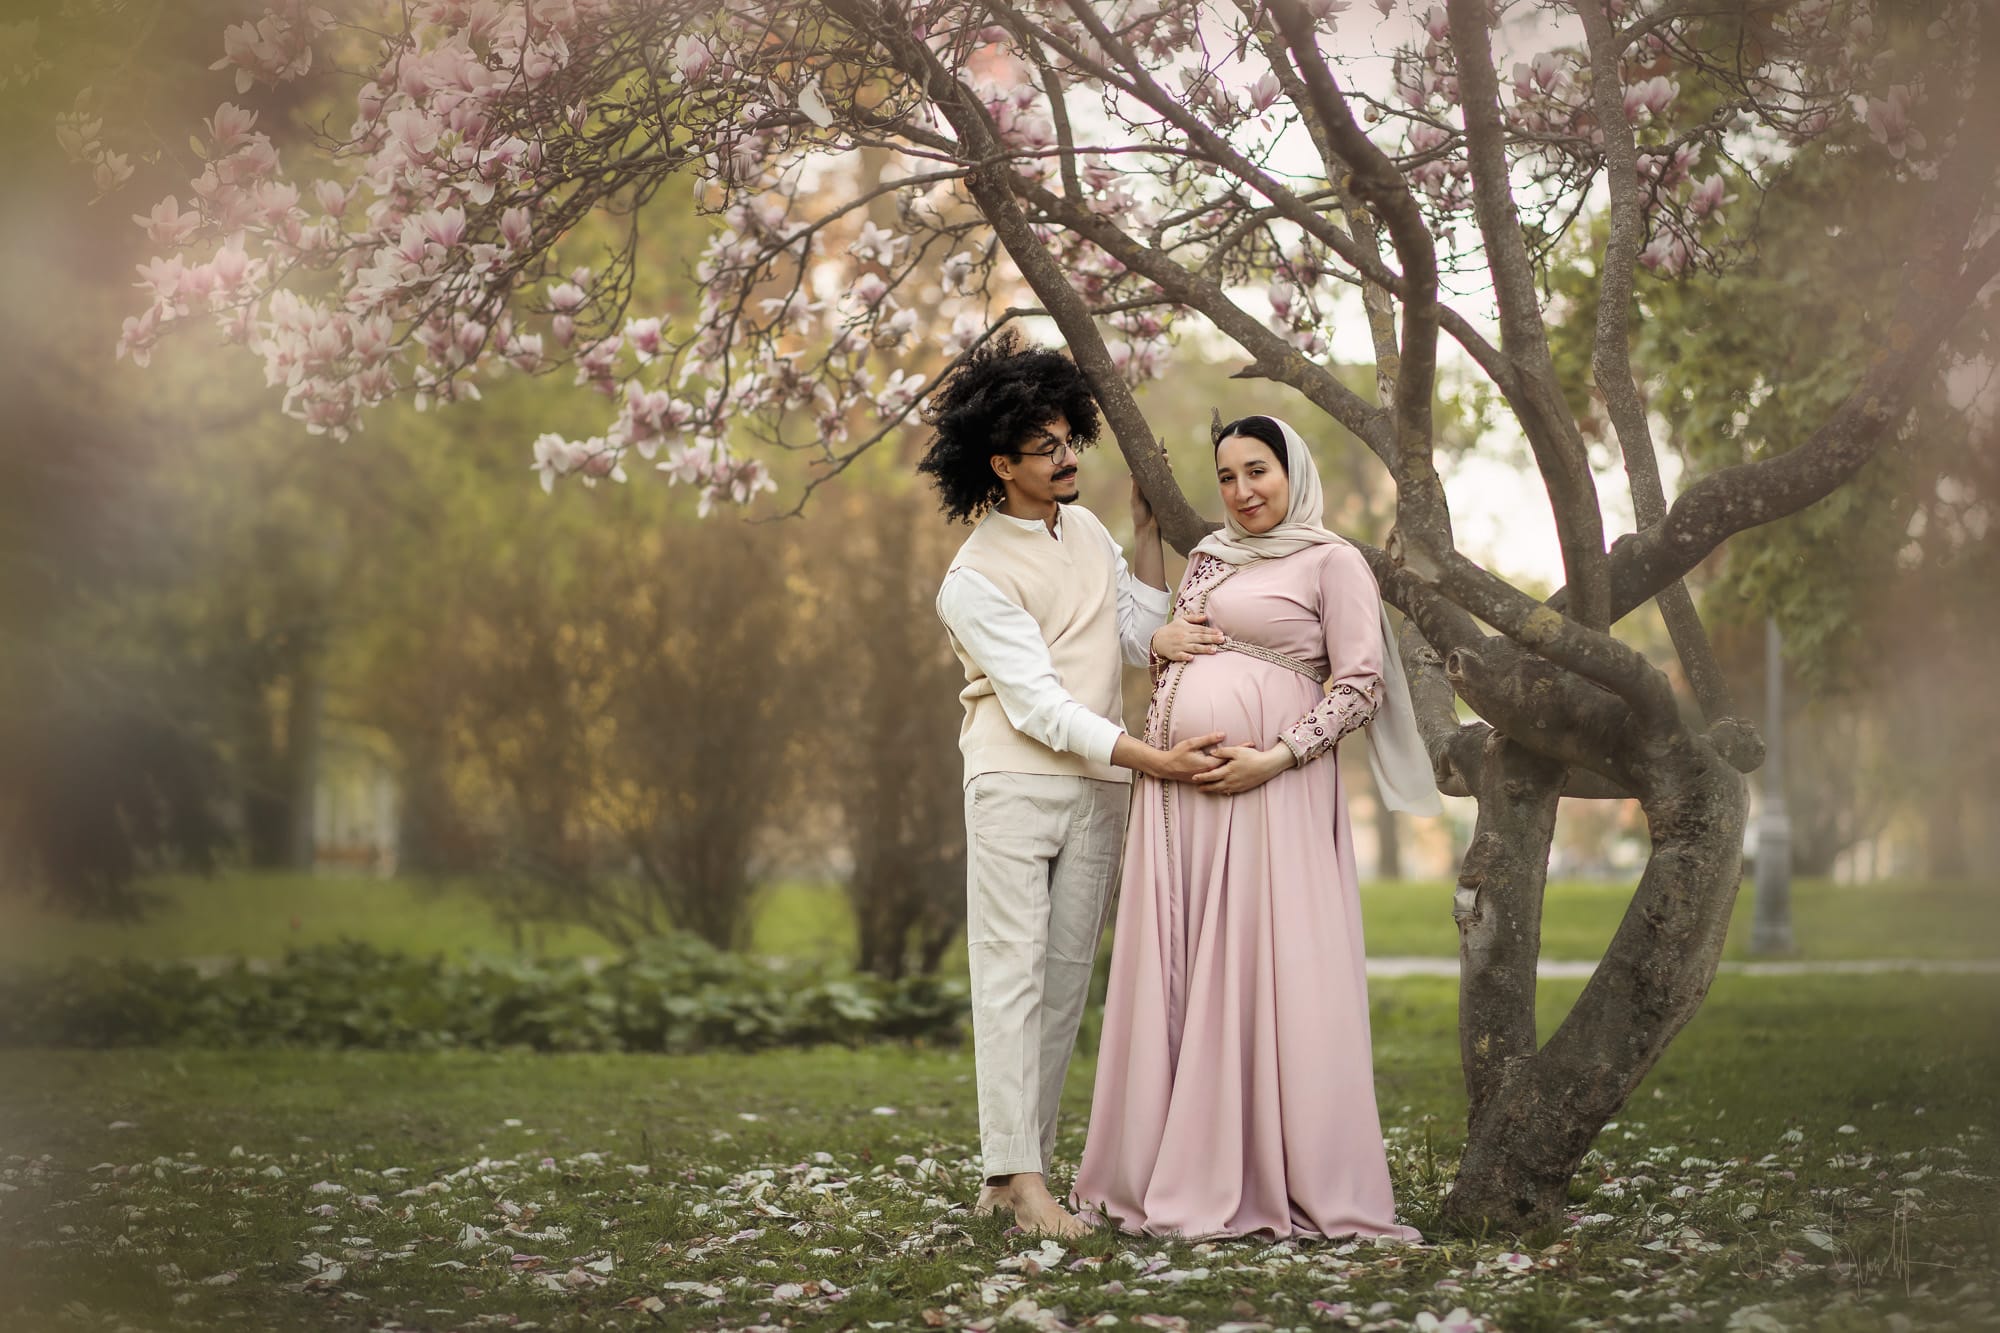 Gravidfotografering av ett par under ett blommande magnoliaträd i Vasaparken i Västerås.